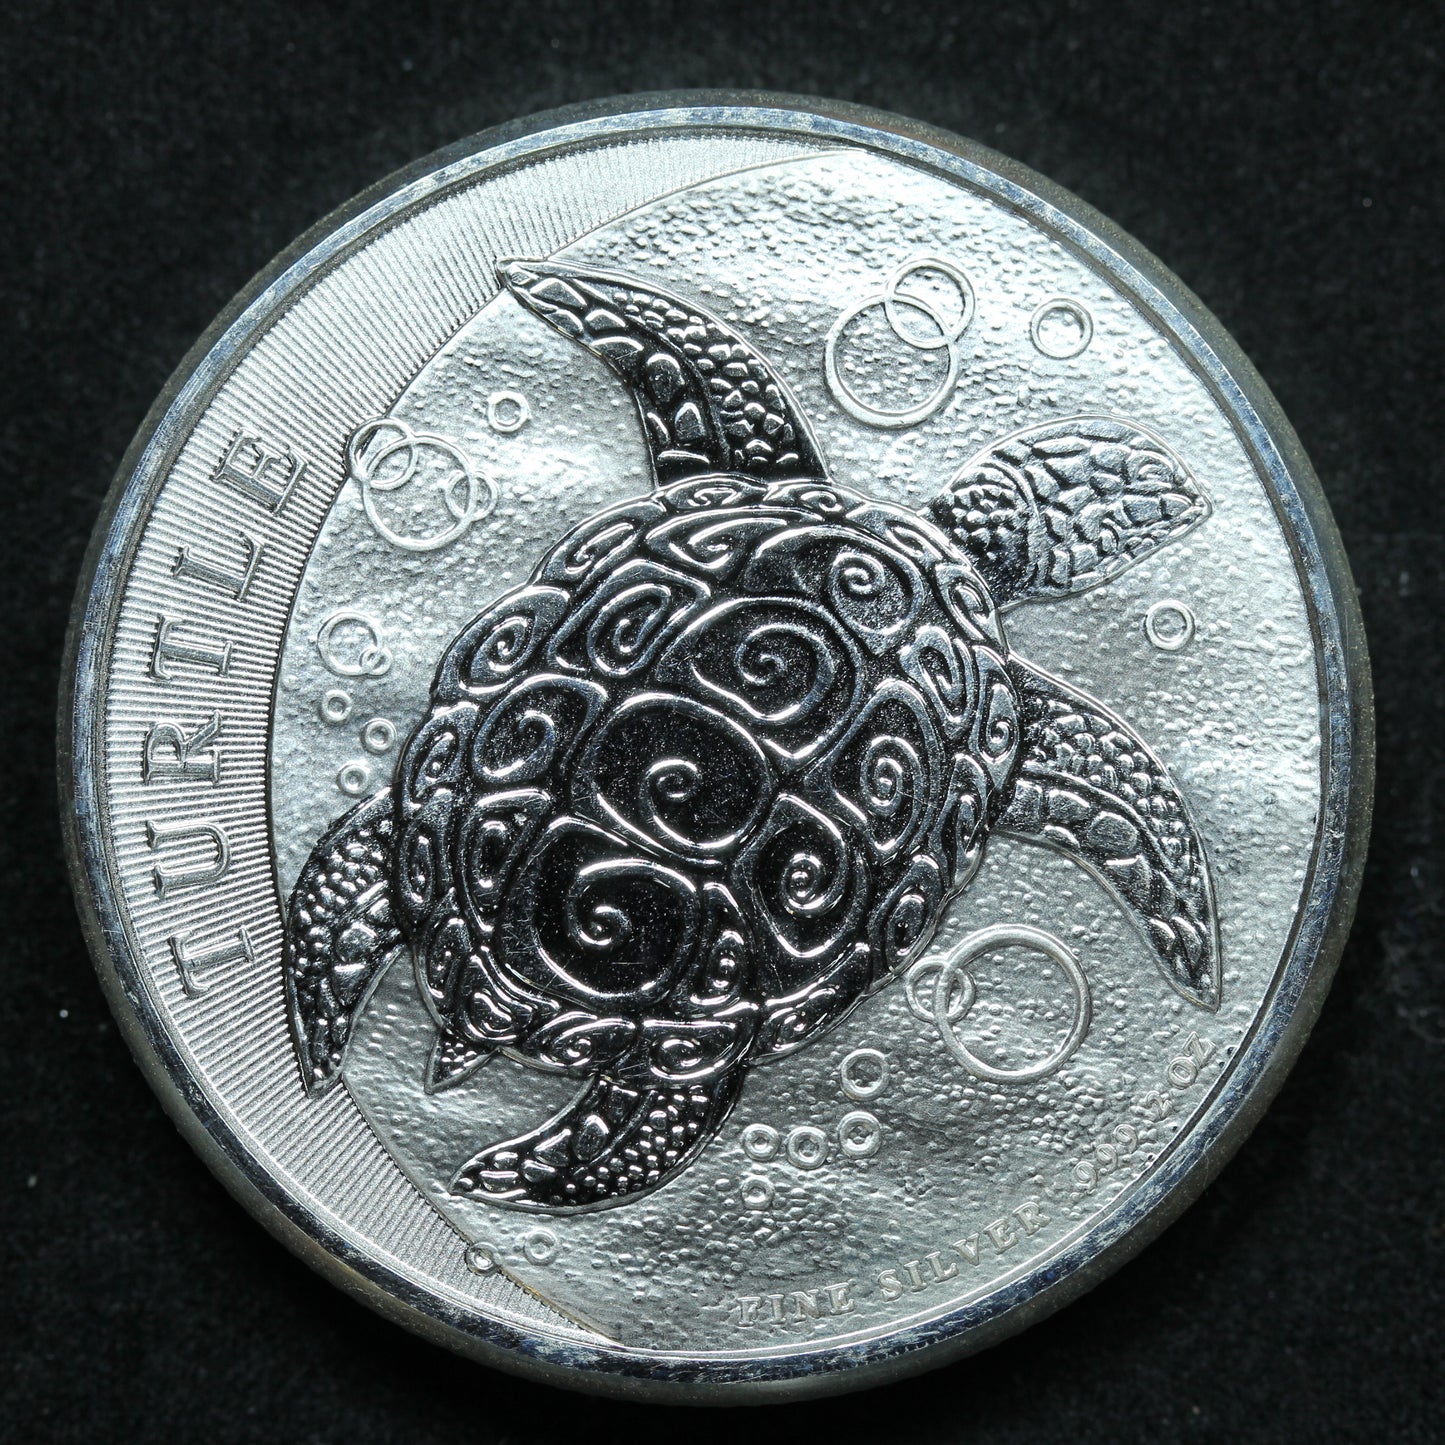 2016 New Zealand $5 Niue Hawksbill Turtle 2 oz .999 Fine Silver